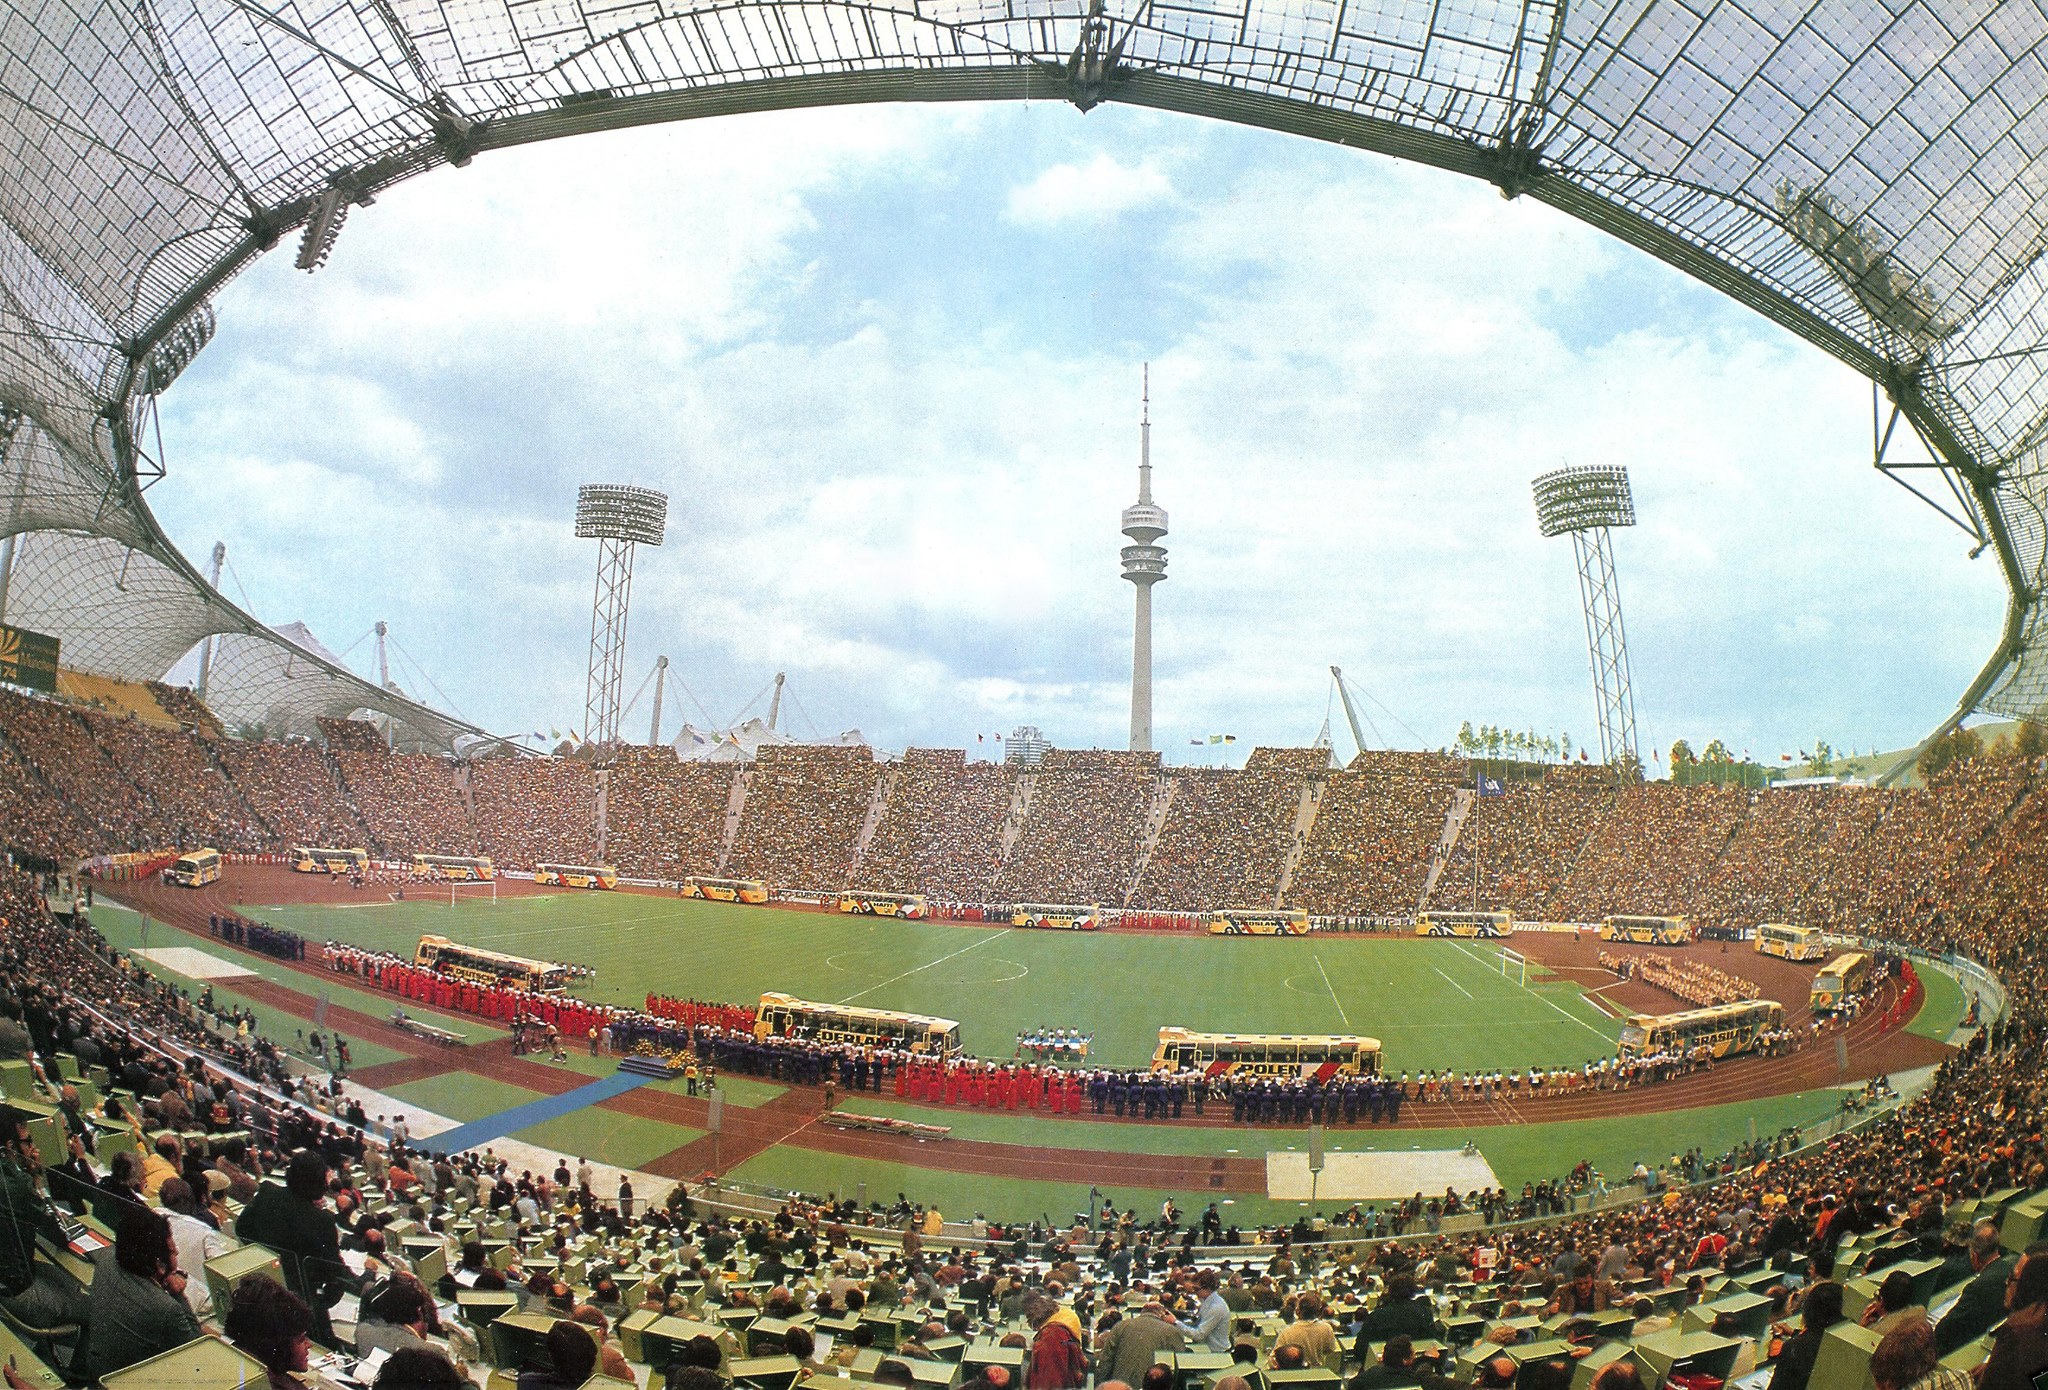 1974: Olympiastadion Munich